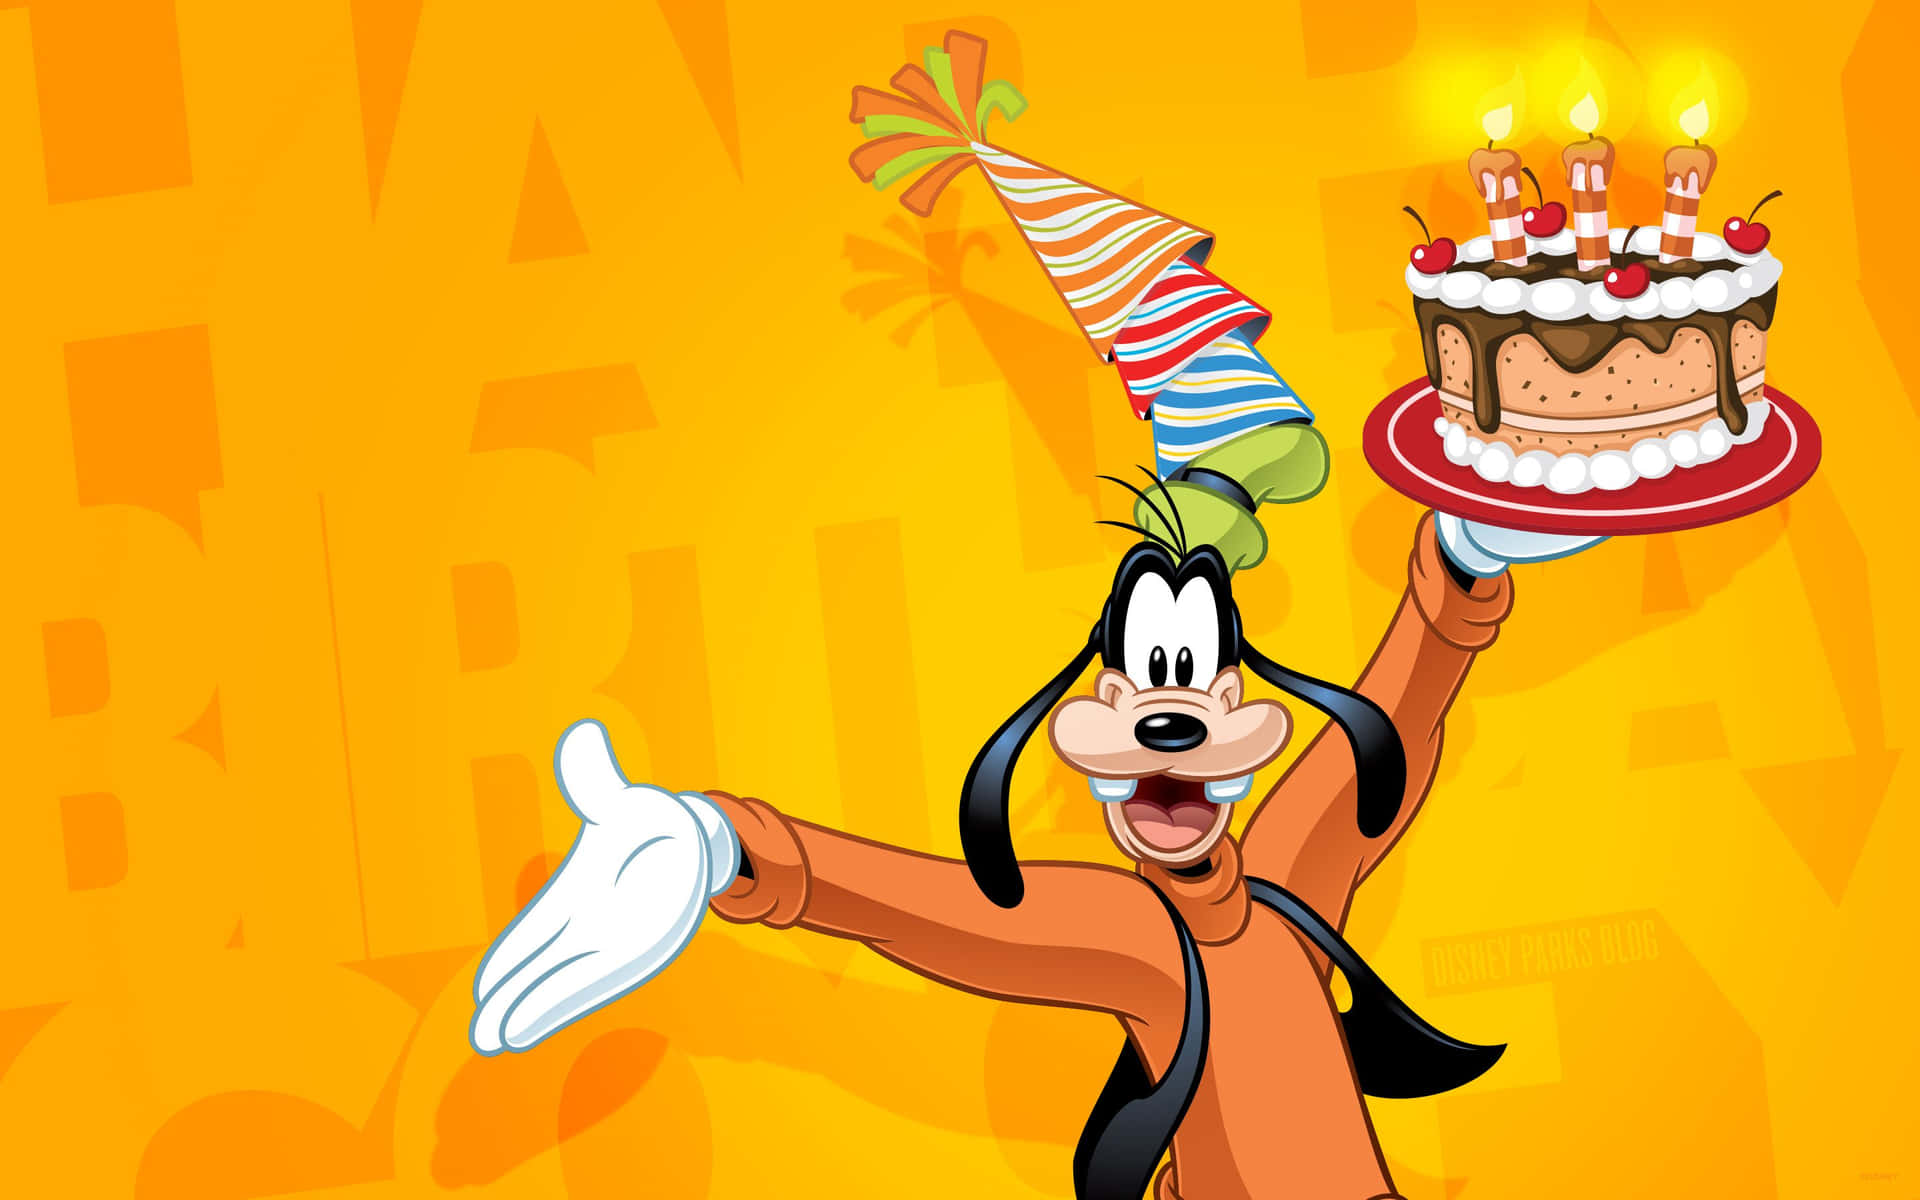 Hintergrundbildvon Goofy, Der Eine Geburtstagstorte Hält.